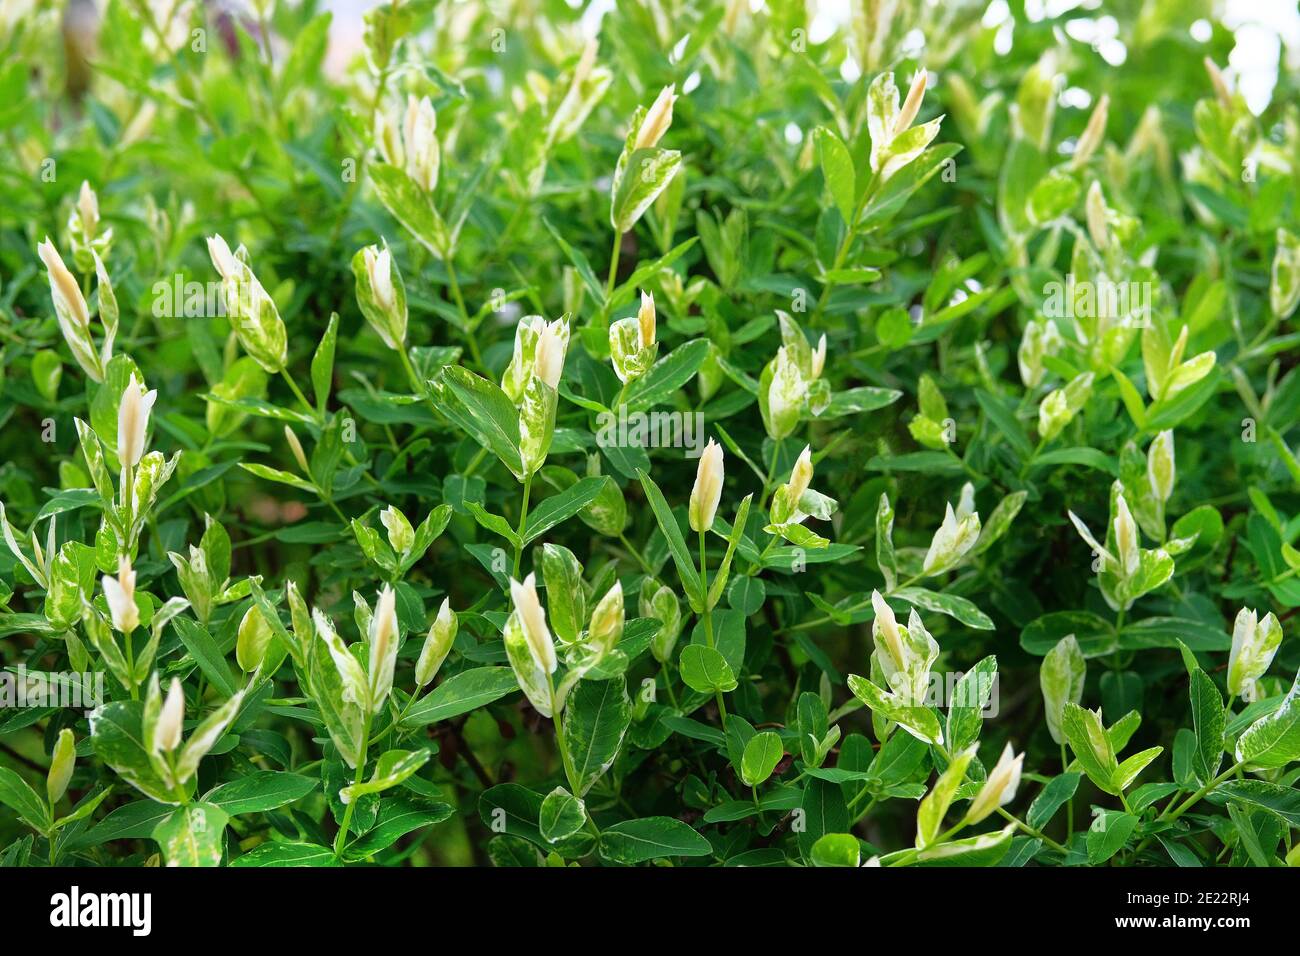 Salix integra, jardín decorativo planta hojas blancas y verdes. Bush del sauce son japoneses de hojas enteras, HAKURO Nishiki. Foto de stock